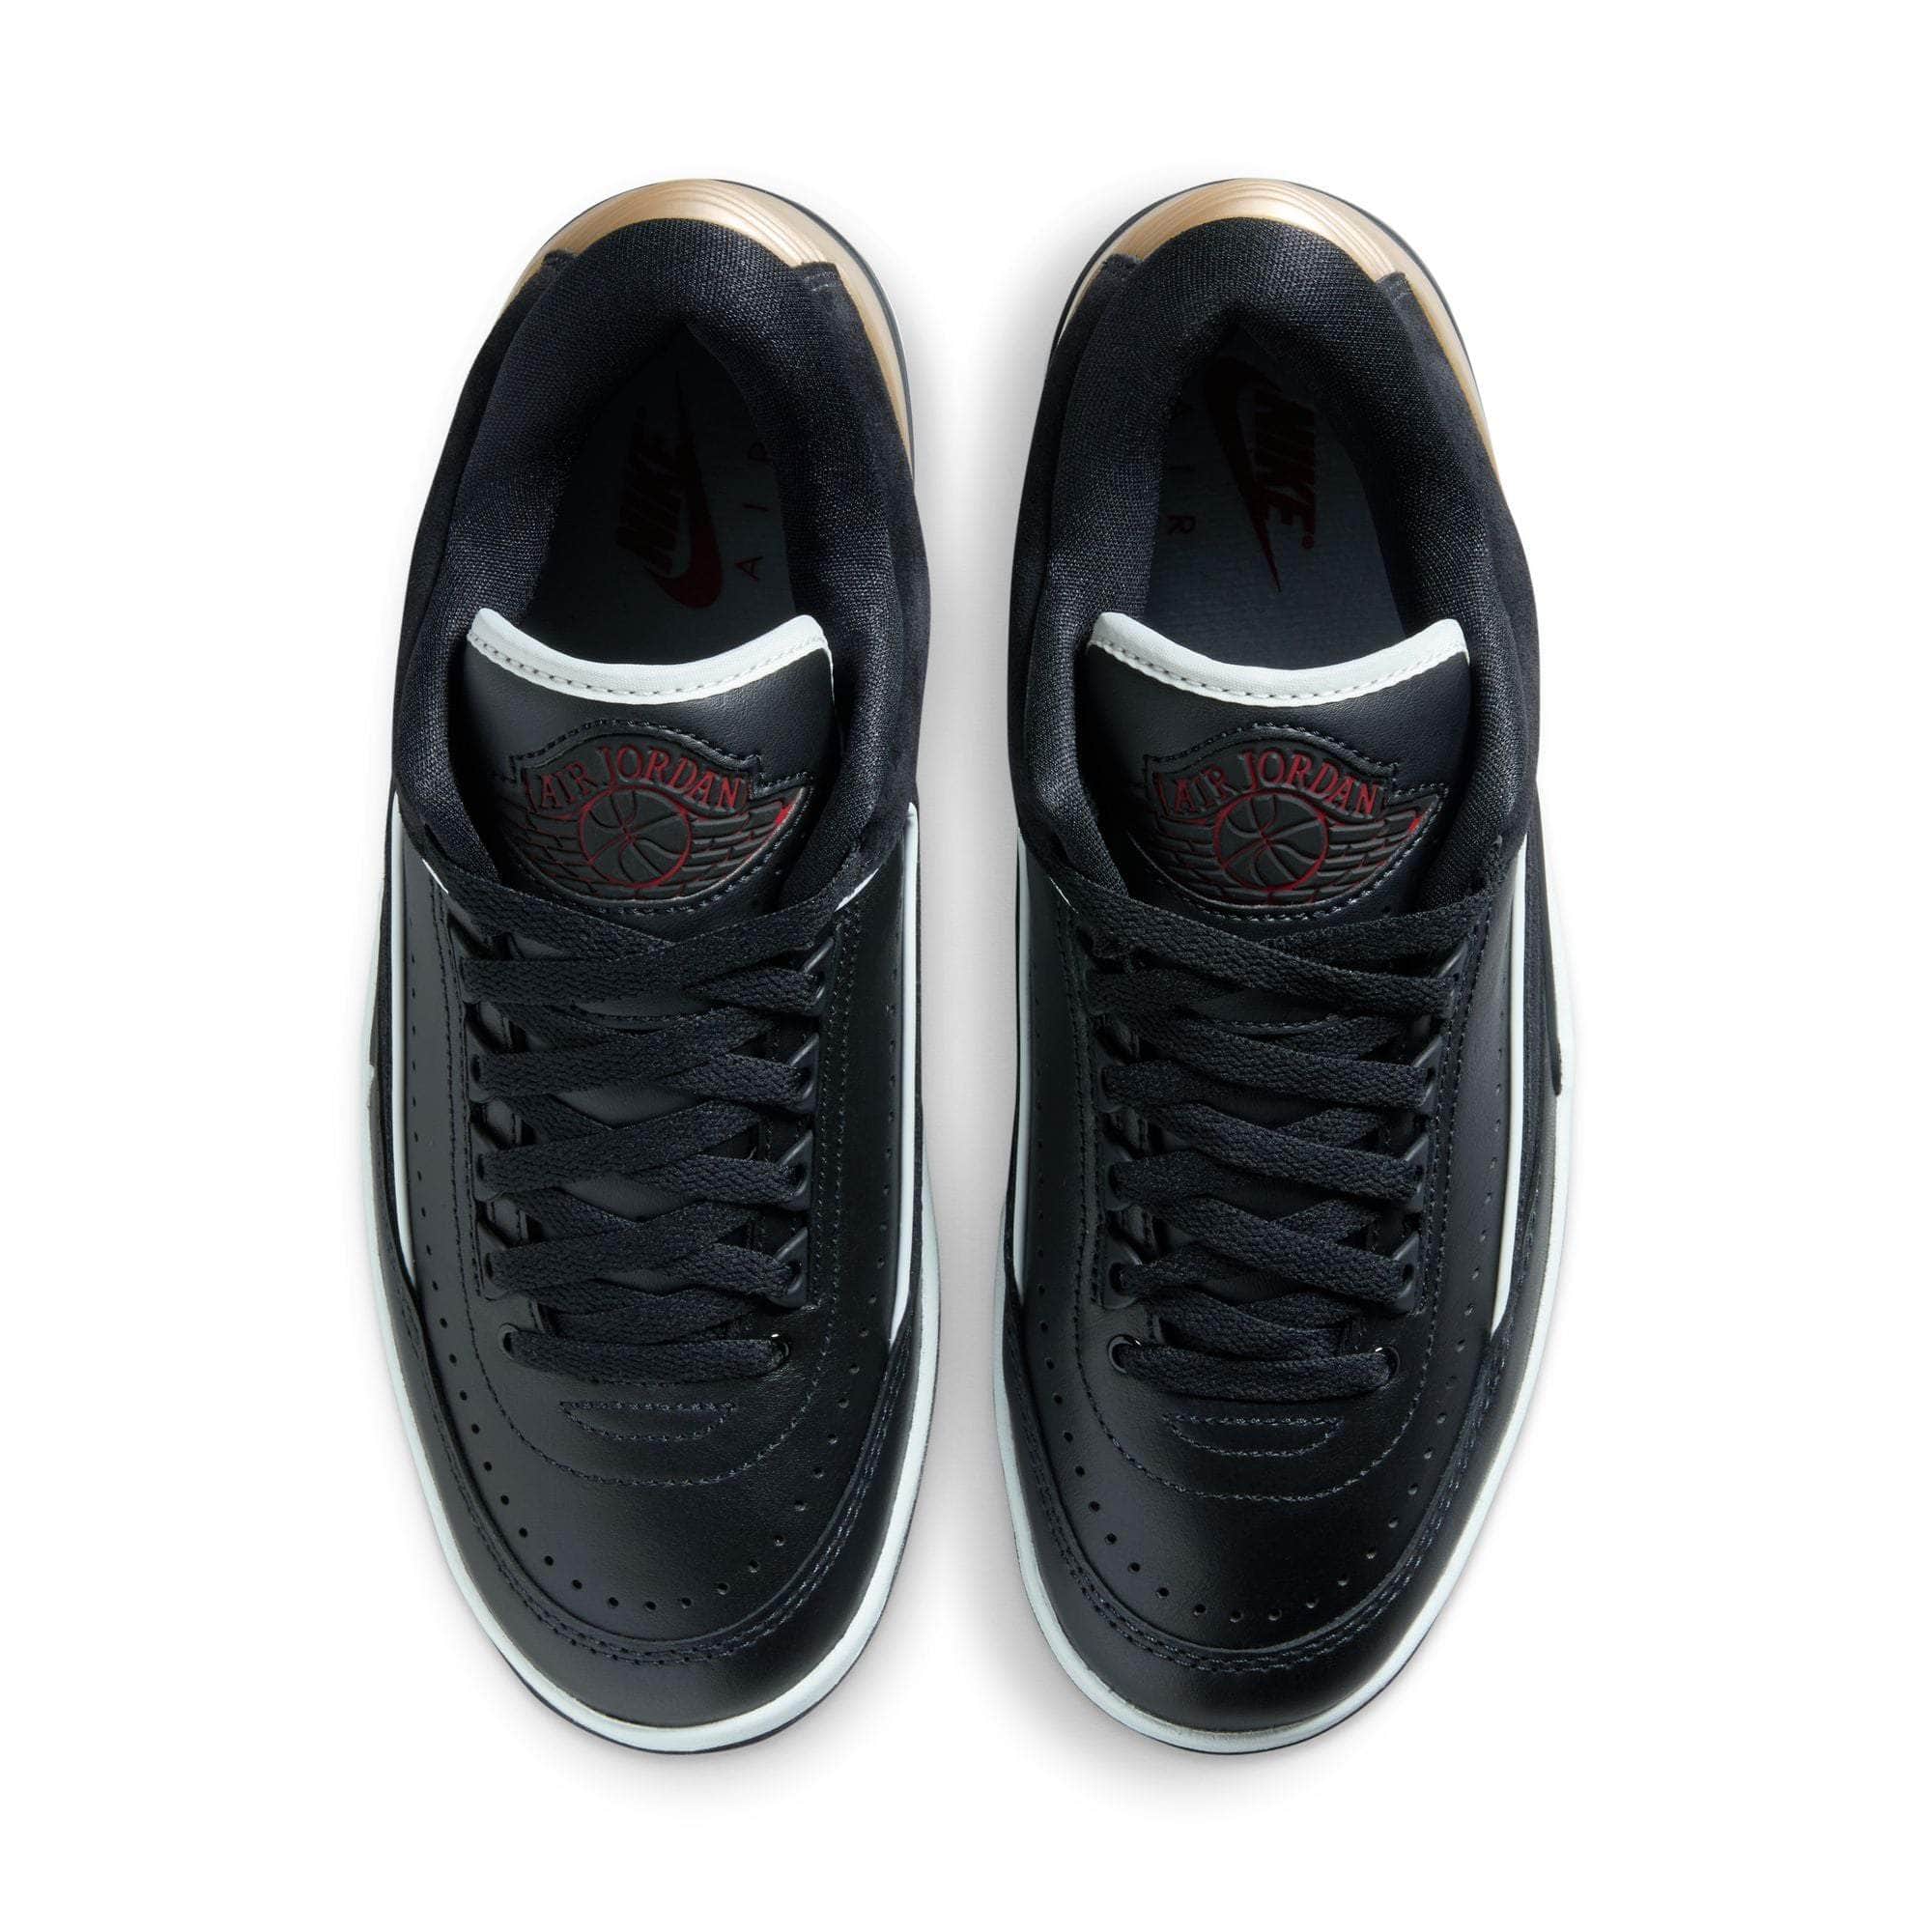 Air Jordan Footwear Air Jordan 2 Retro Low "Black Metallic Gold" - Women's